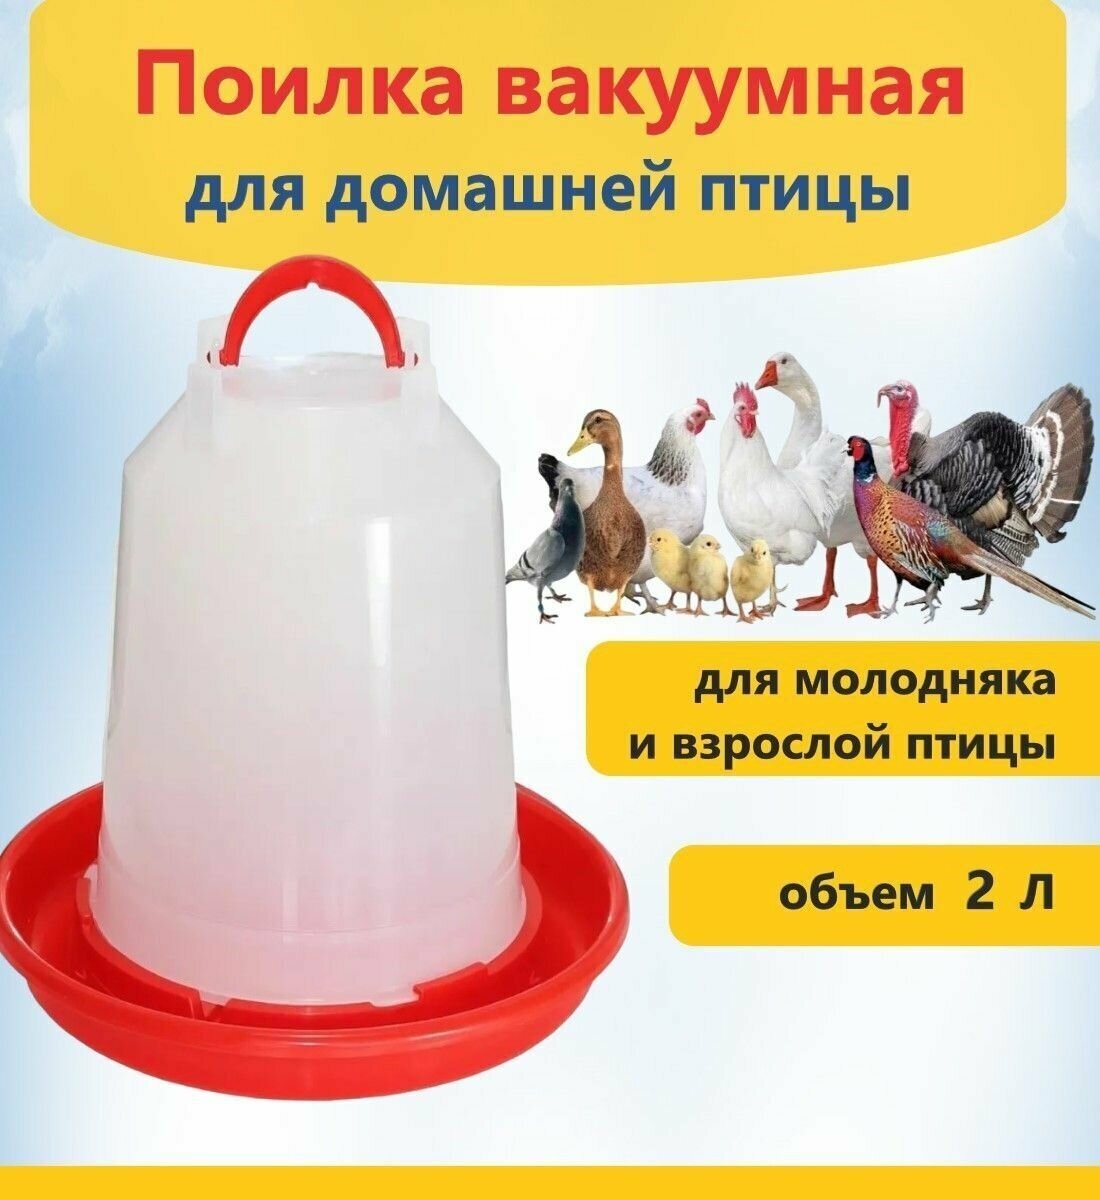 Поилка вакуумная, объем 2 л, из пищевого пластика, для поения домашней птицы и цыплят, можно поставить на поверхность или подвесить за удобную ручку